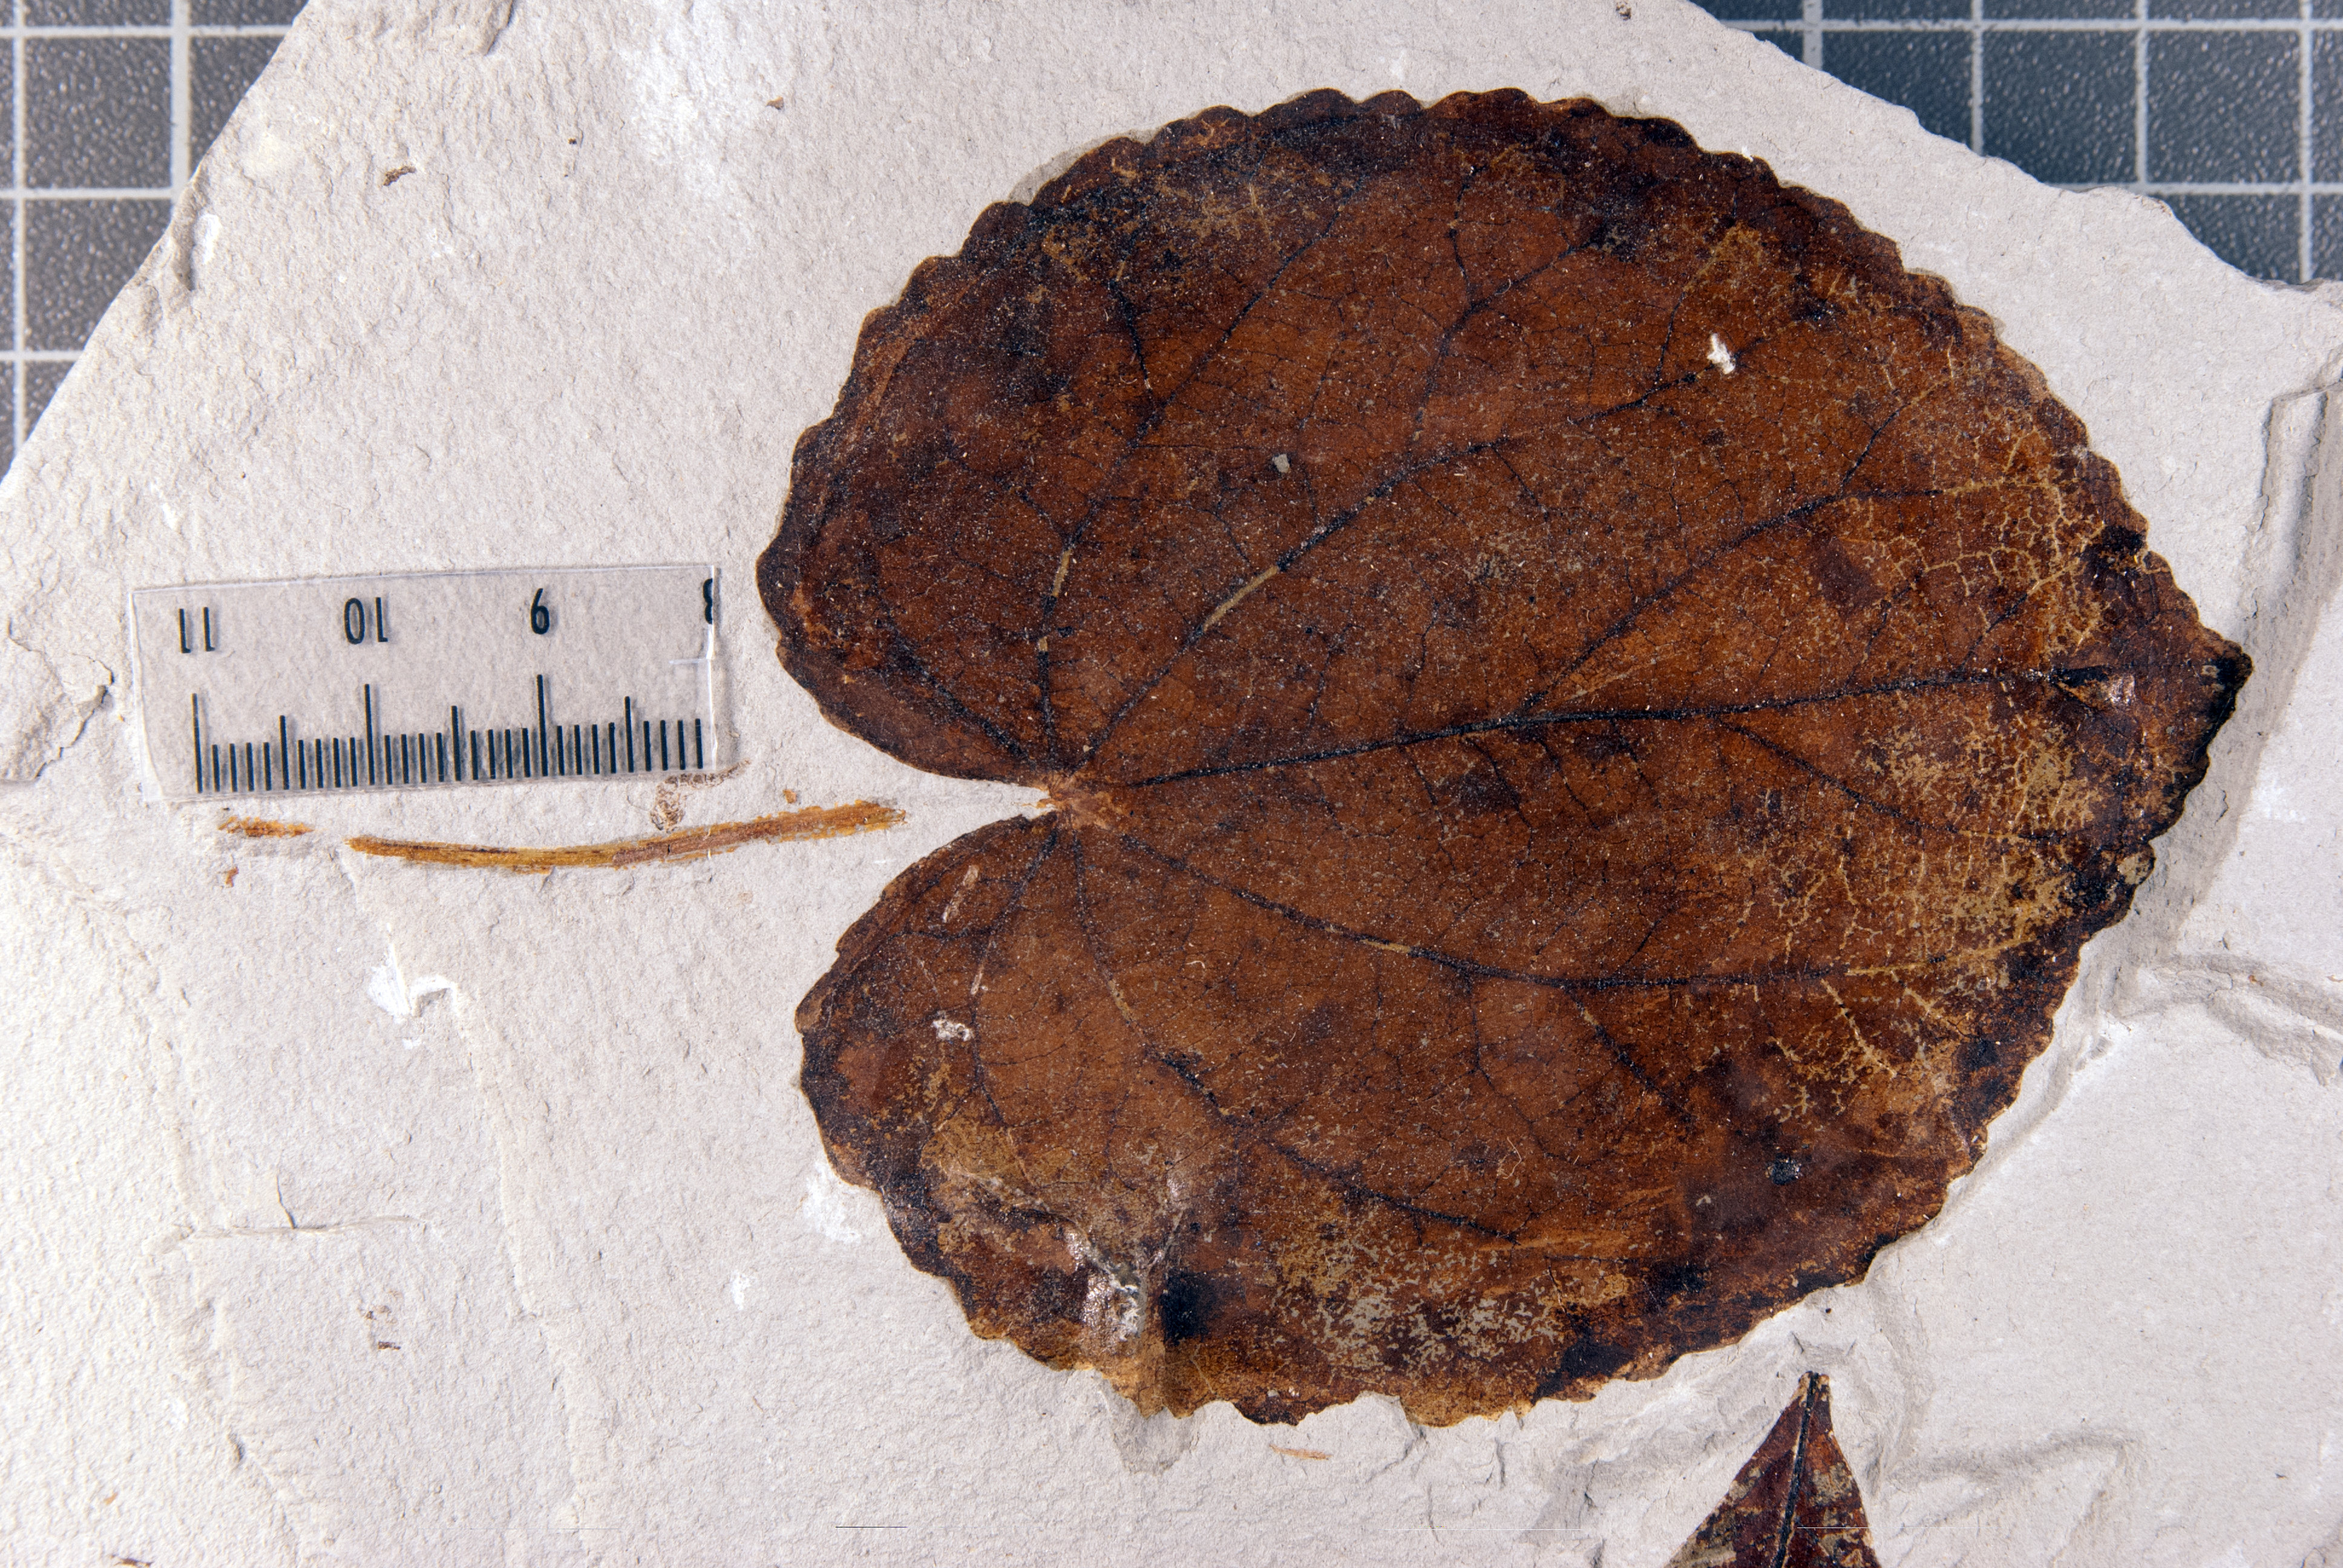 Blatt von einem Baum der Gattung Cercidiphyllum (C. crenatum) aus dem Pliozän aus der Fossilfundstelle Willershausen (Harz). 